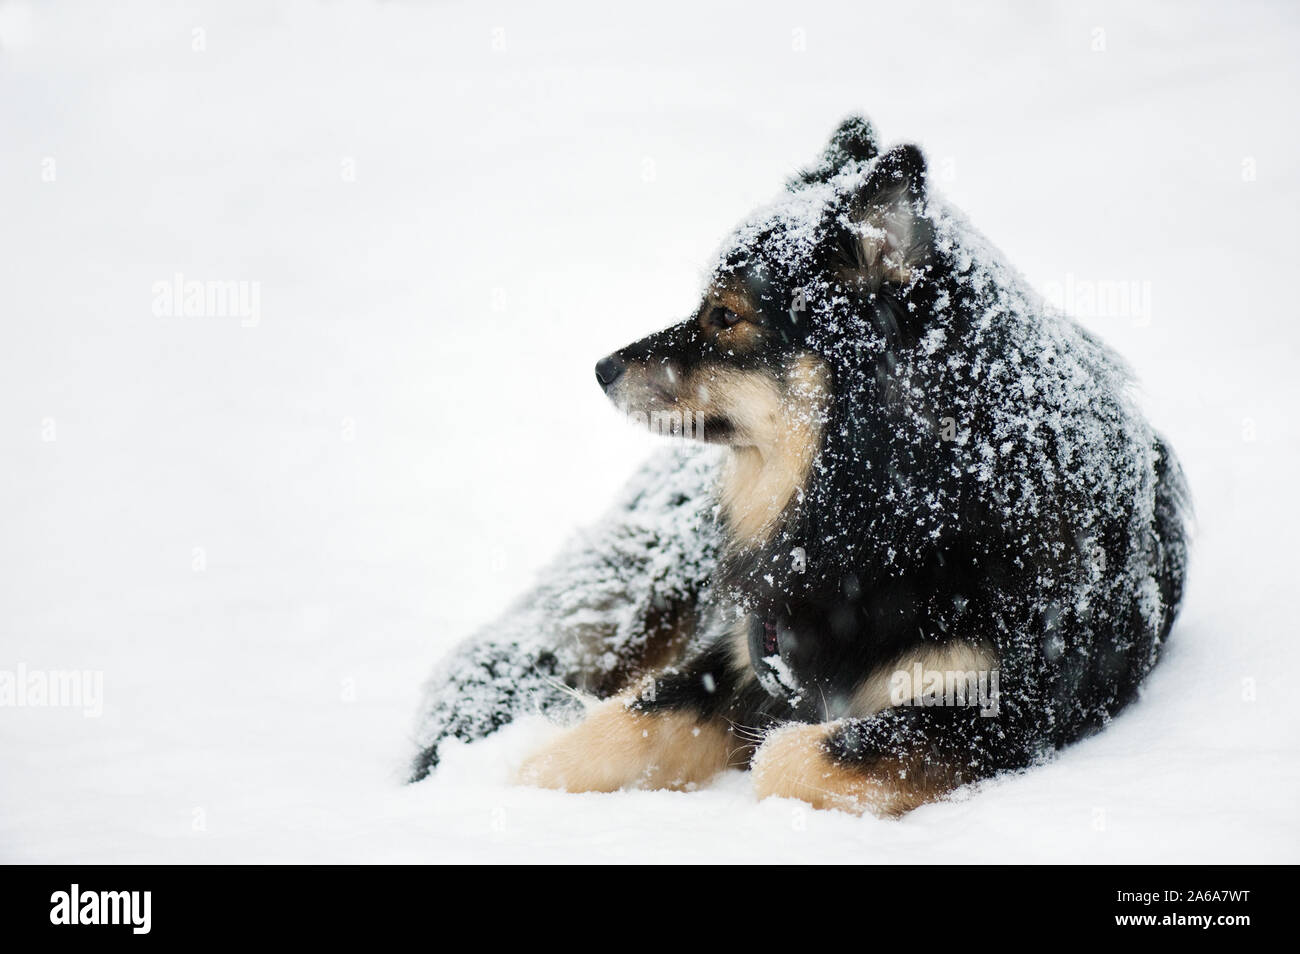 Finlandese Lapphund riposo nella neve d'inverno. Foto Stock